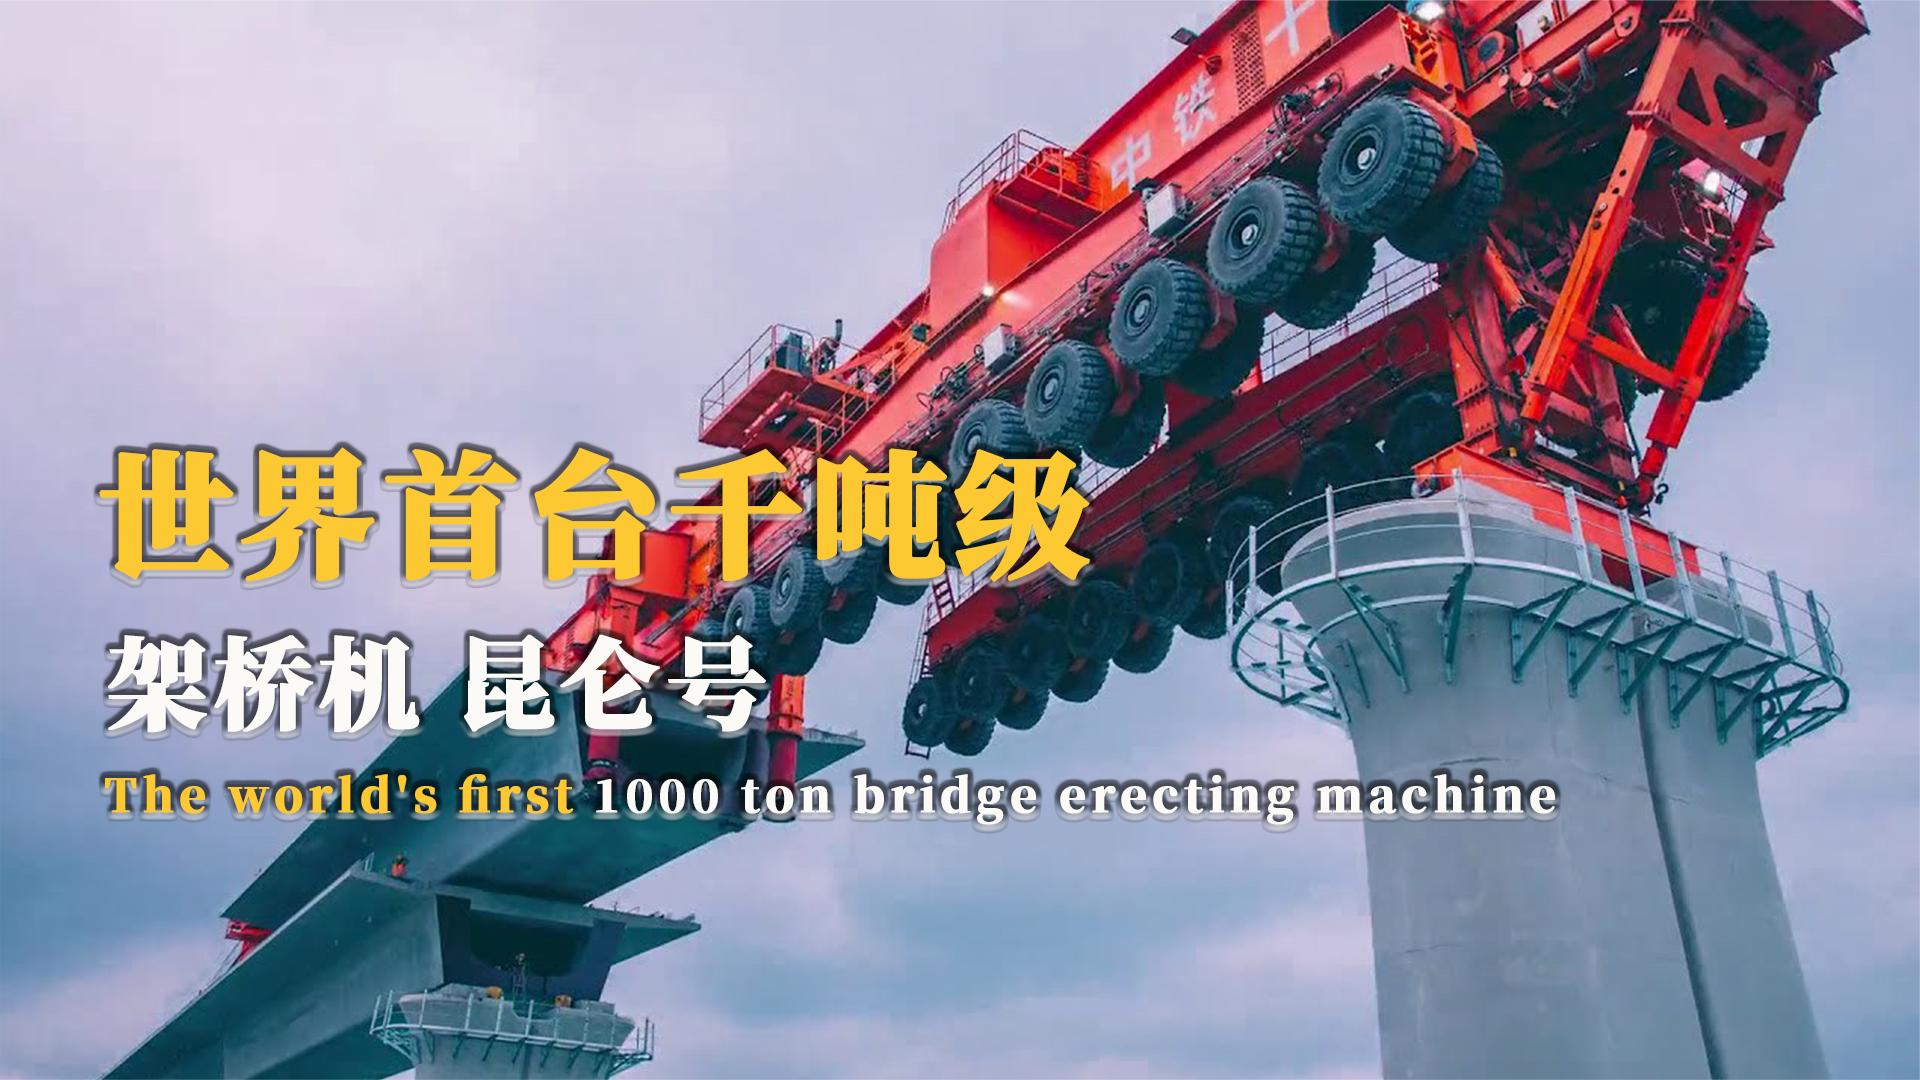 厉害了我的国!中国基建新装备 全球首台千吨级架桥机!